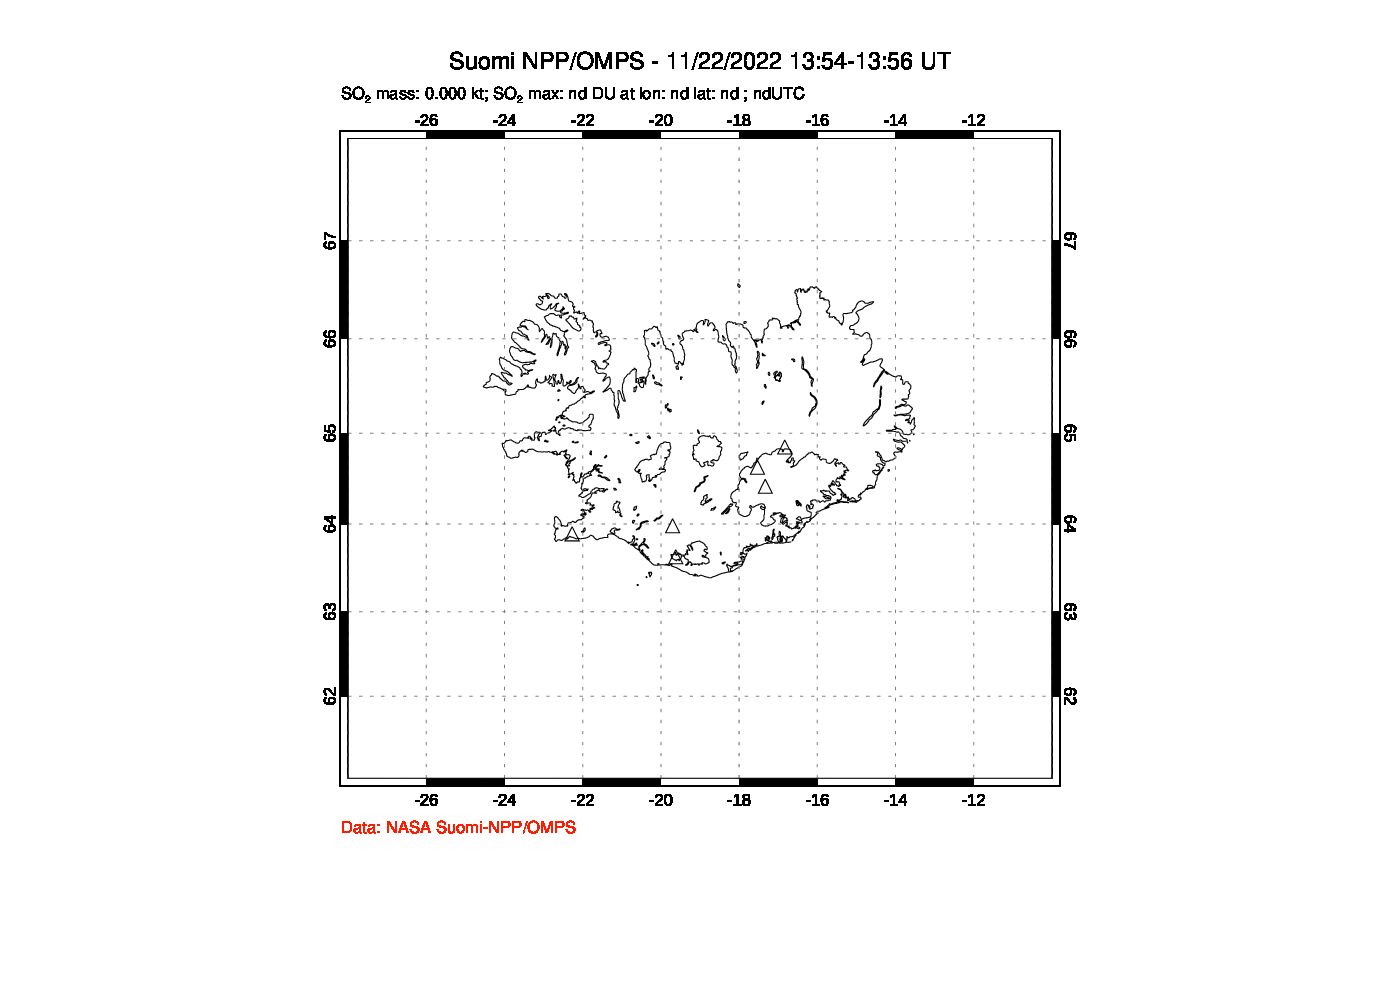 A sulfur dioxide image over Iceland on Nov 22, 2022.